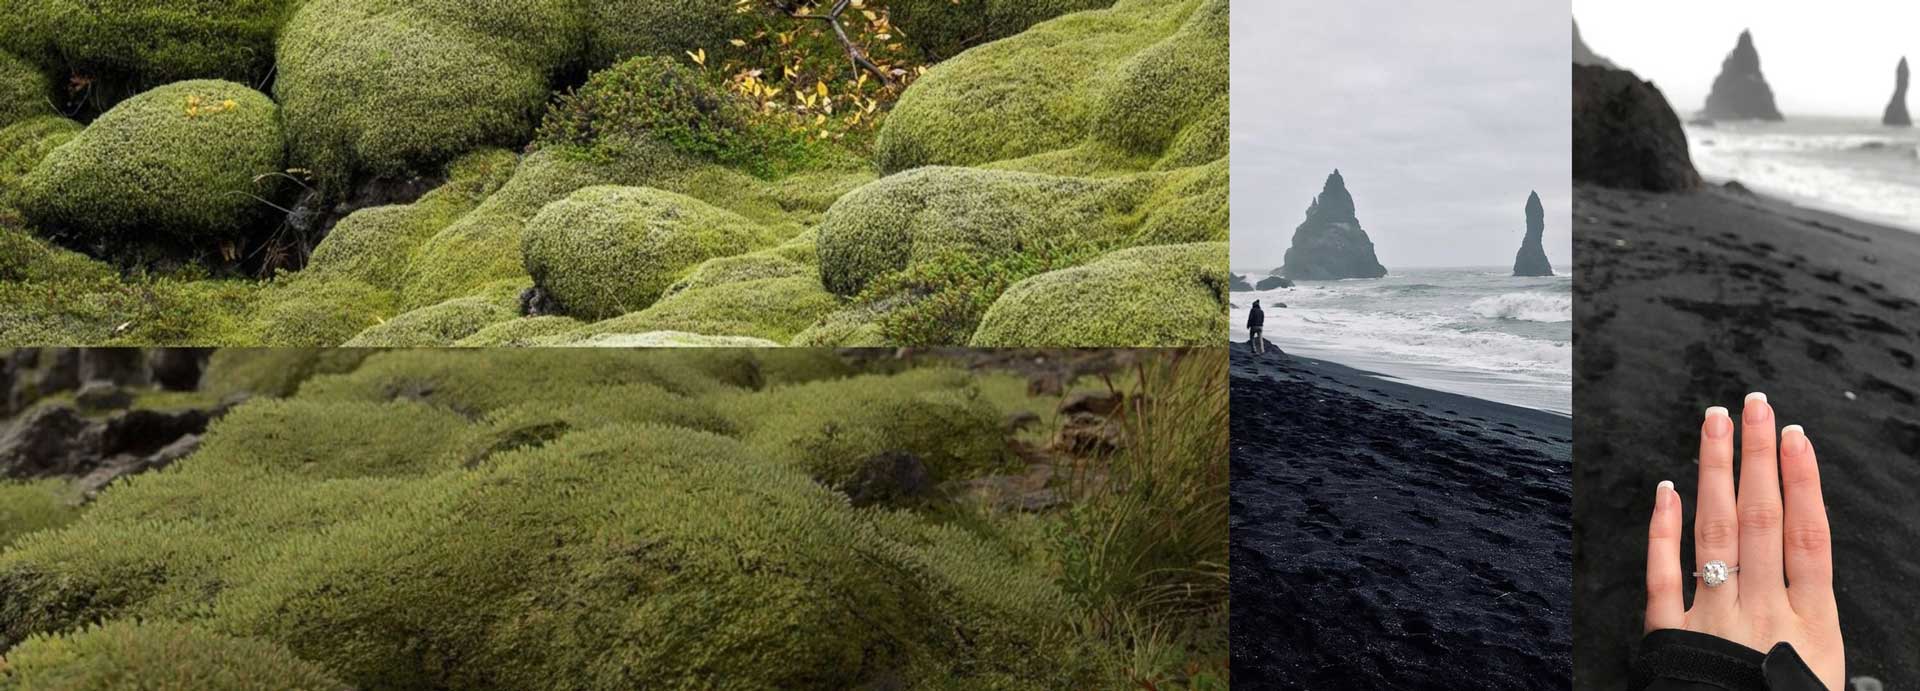 مقایسه تصاویر واقعی طبیعت کشور ایسلند با طبیعت بازی دث استرندینگ هیدئو کوجیما